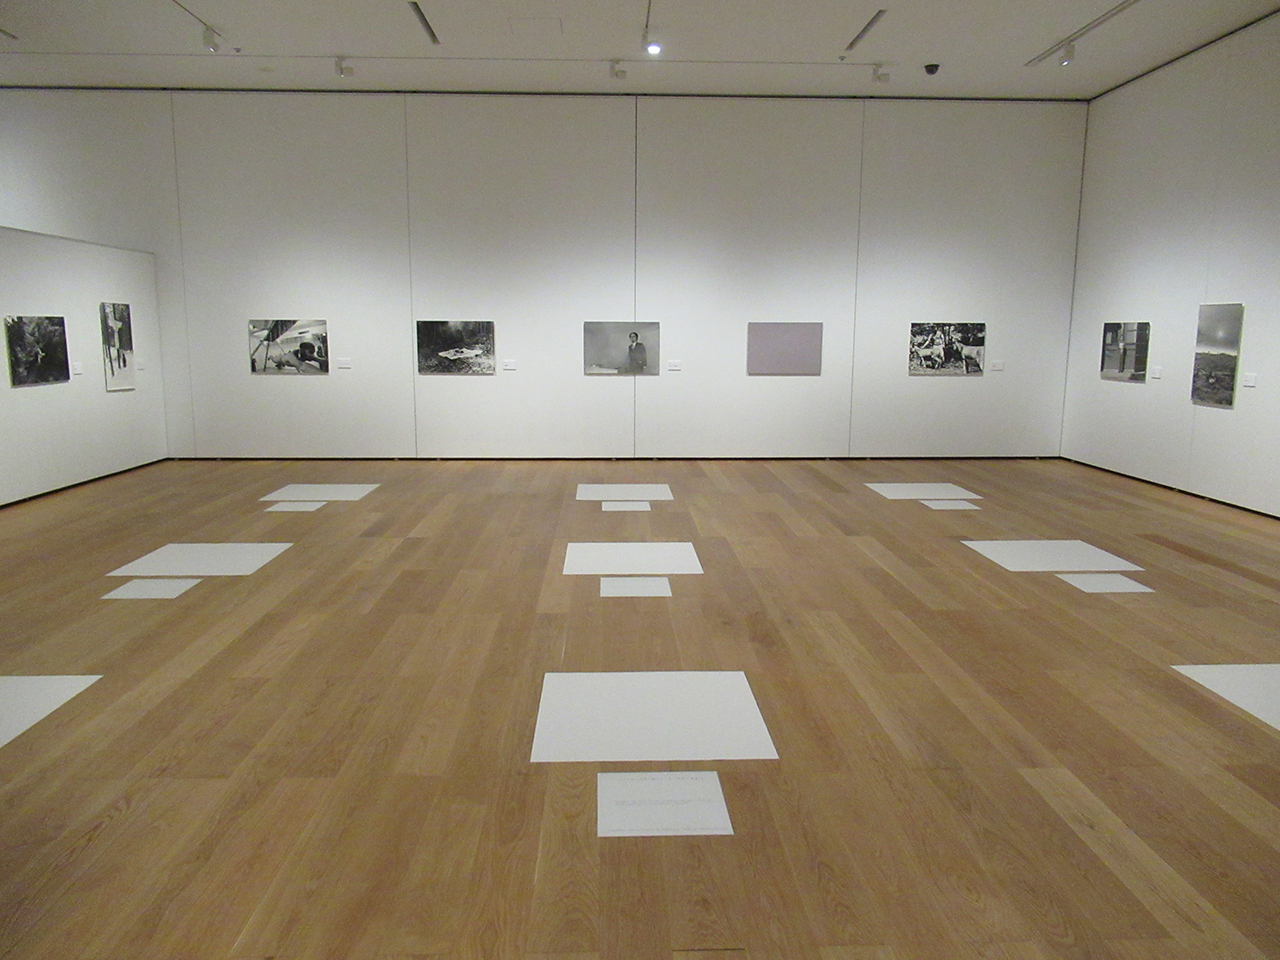 サンパウロ・ビエンナーレを再現した「九想の室」。床に白紙と「この白き紙を水と観ぜよ」などと書かれた紙が9組置かれ、壁にはニルヴァーナ・グループの活動写真が飾られている